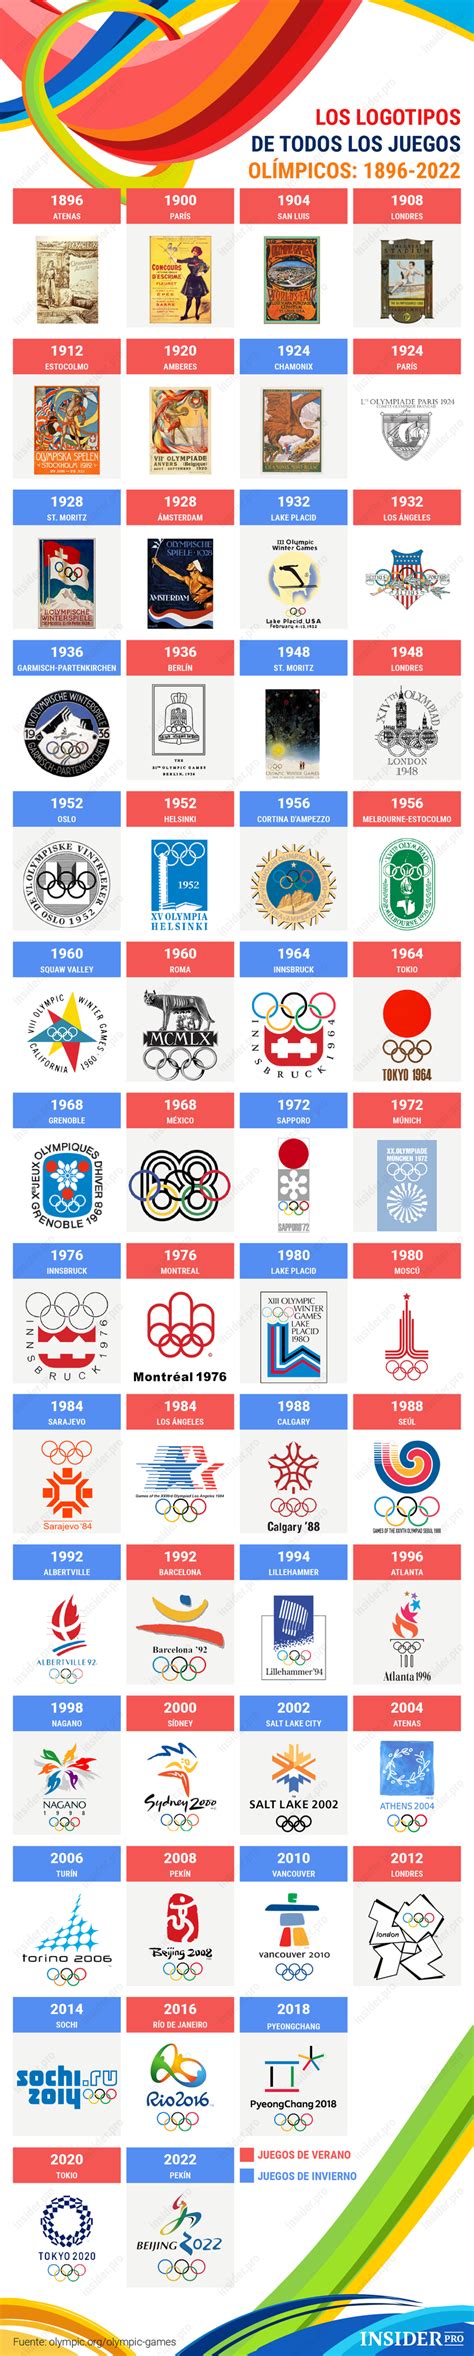 Logos de los juegos olímpicos (emblemas). Infografía: Todos los logos de los Juegos Olímpicos desde 1896 hasta 2022 | Infografía | Insider.pro